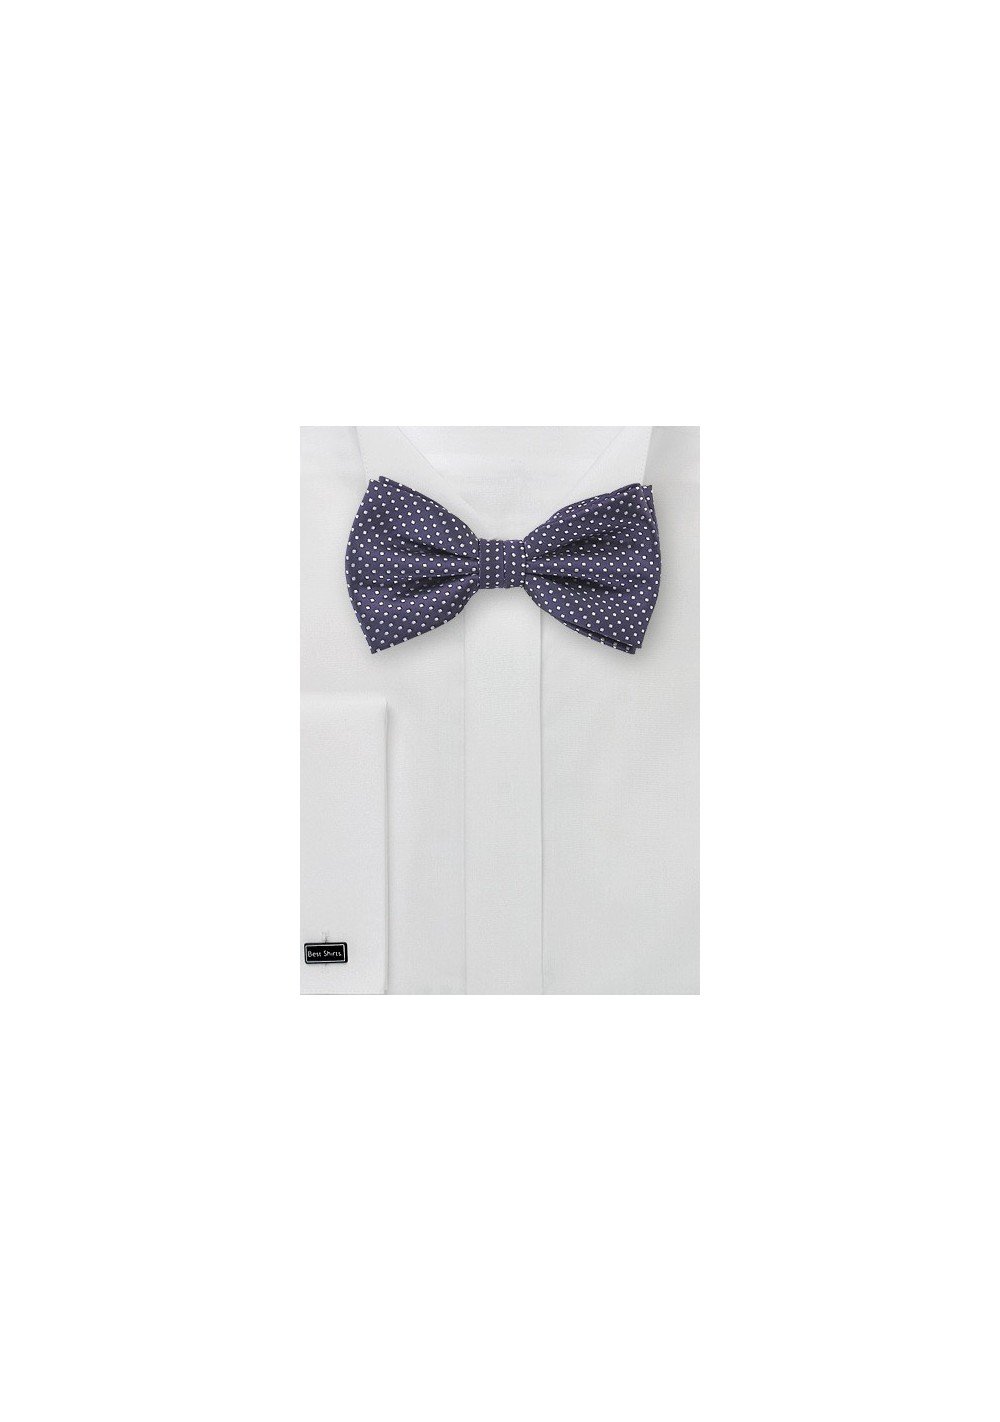 toegang pindas Niet verwacht Pin Dot Bow Tie in Dark Amethyst Purple | Bows-N-Ties.com